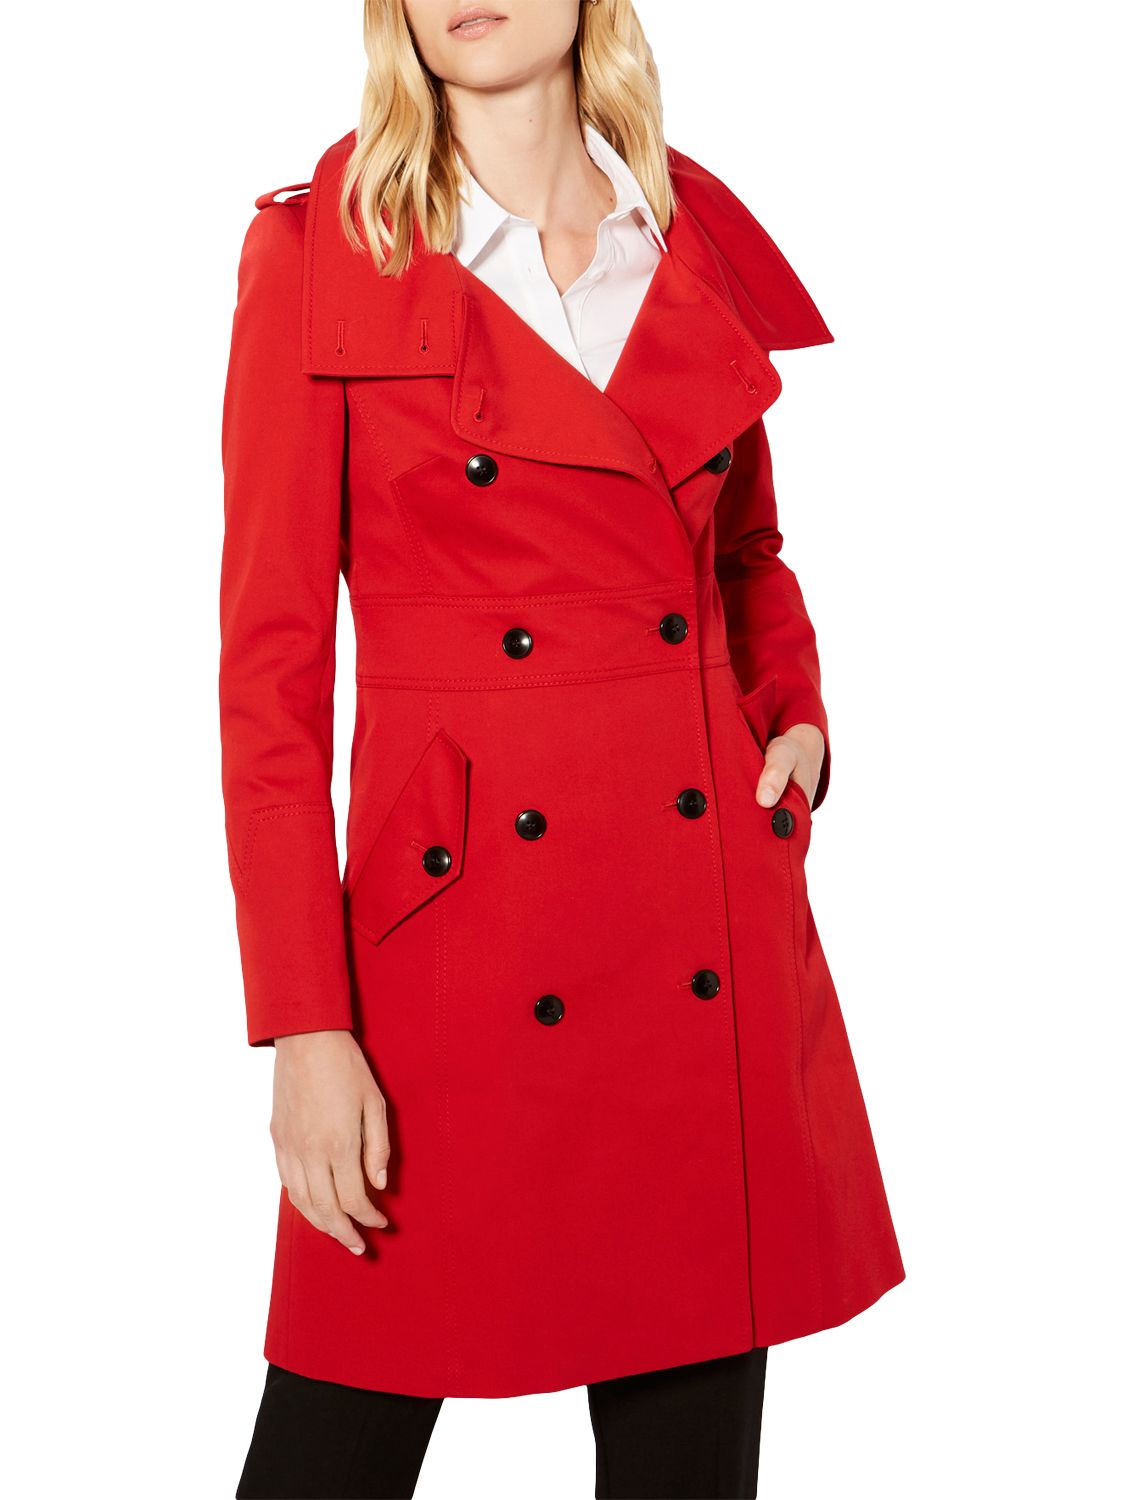 Karen Millen Classic Trench Coat, Red at John Lewis & Partners